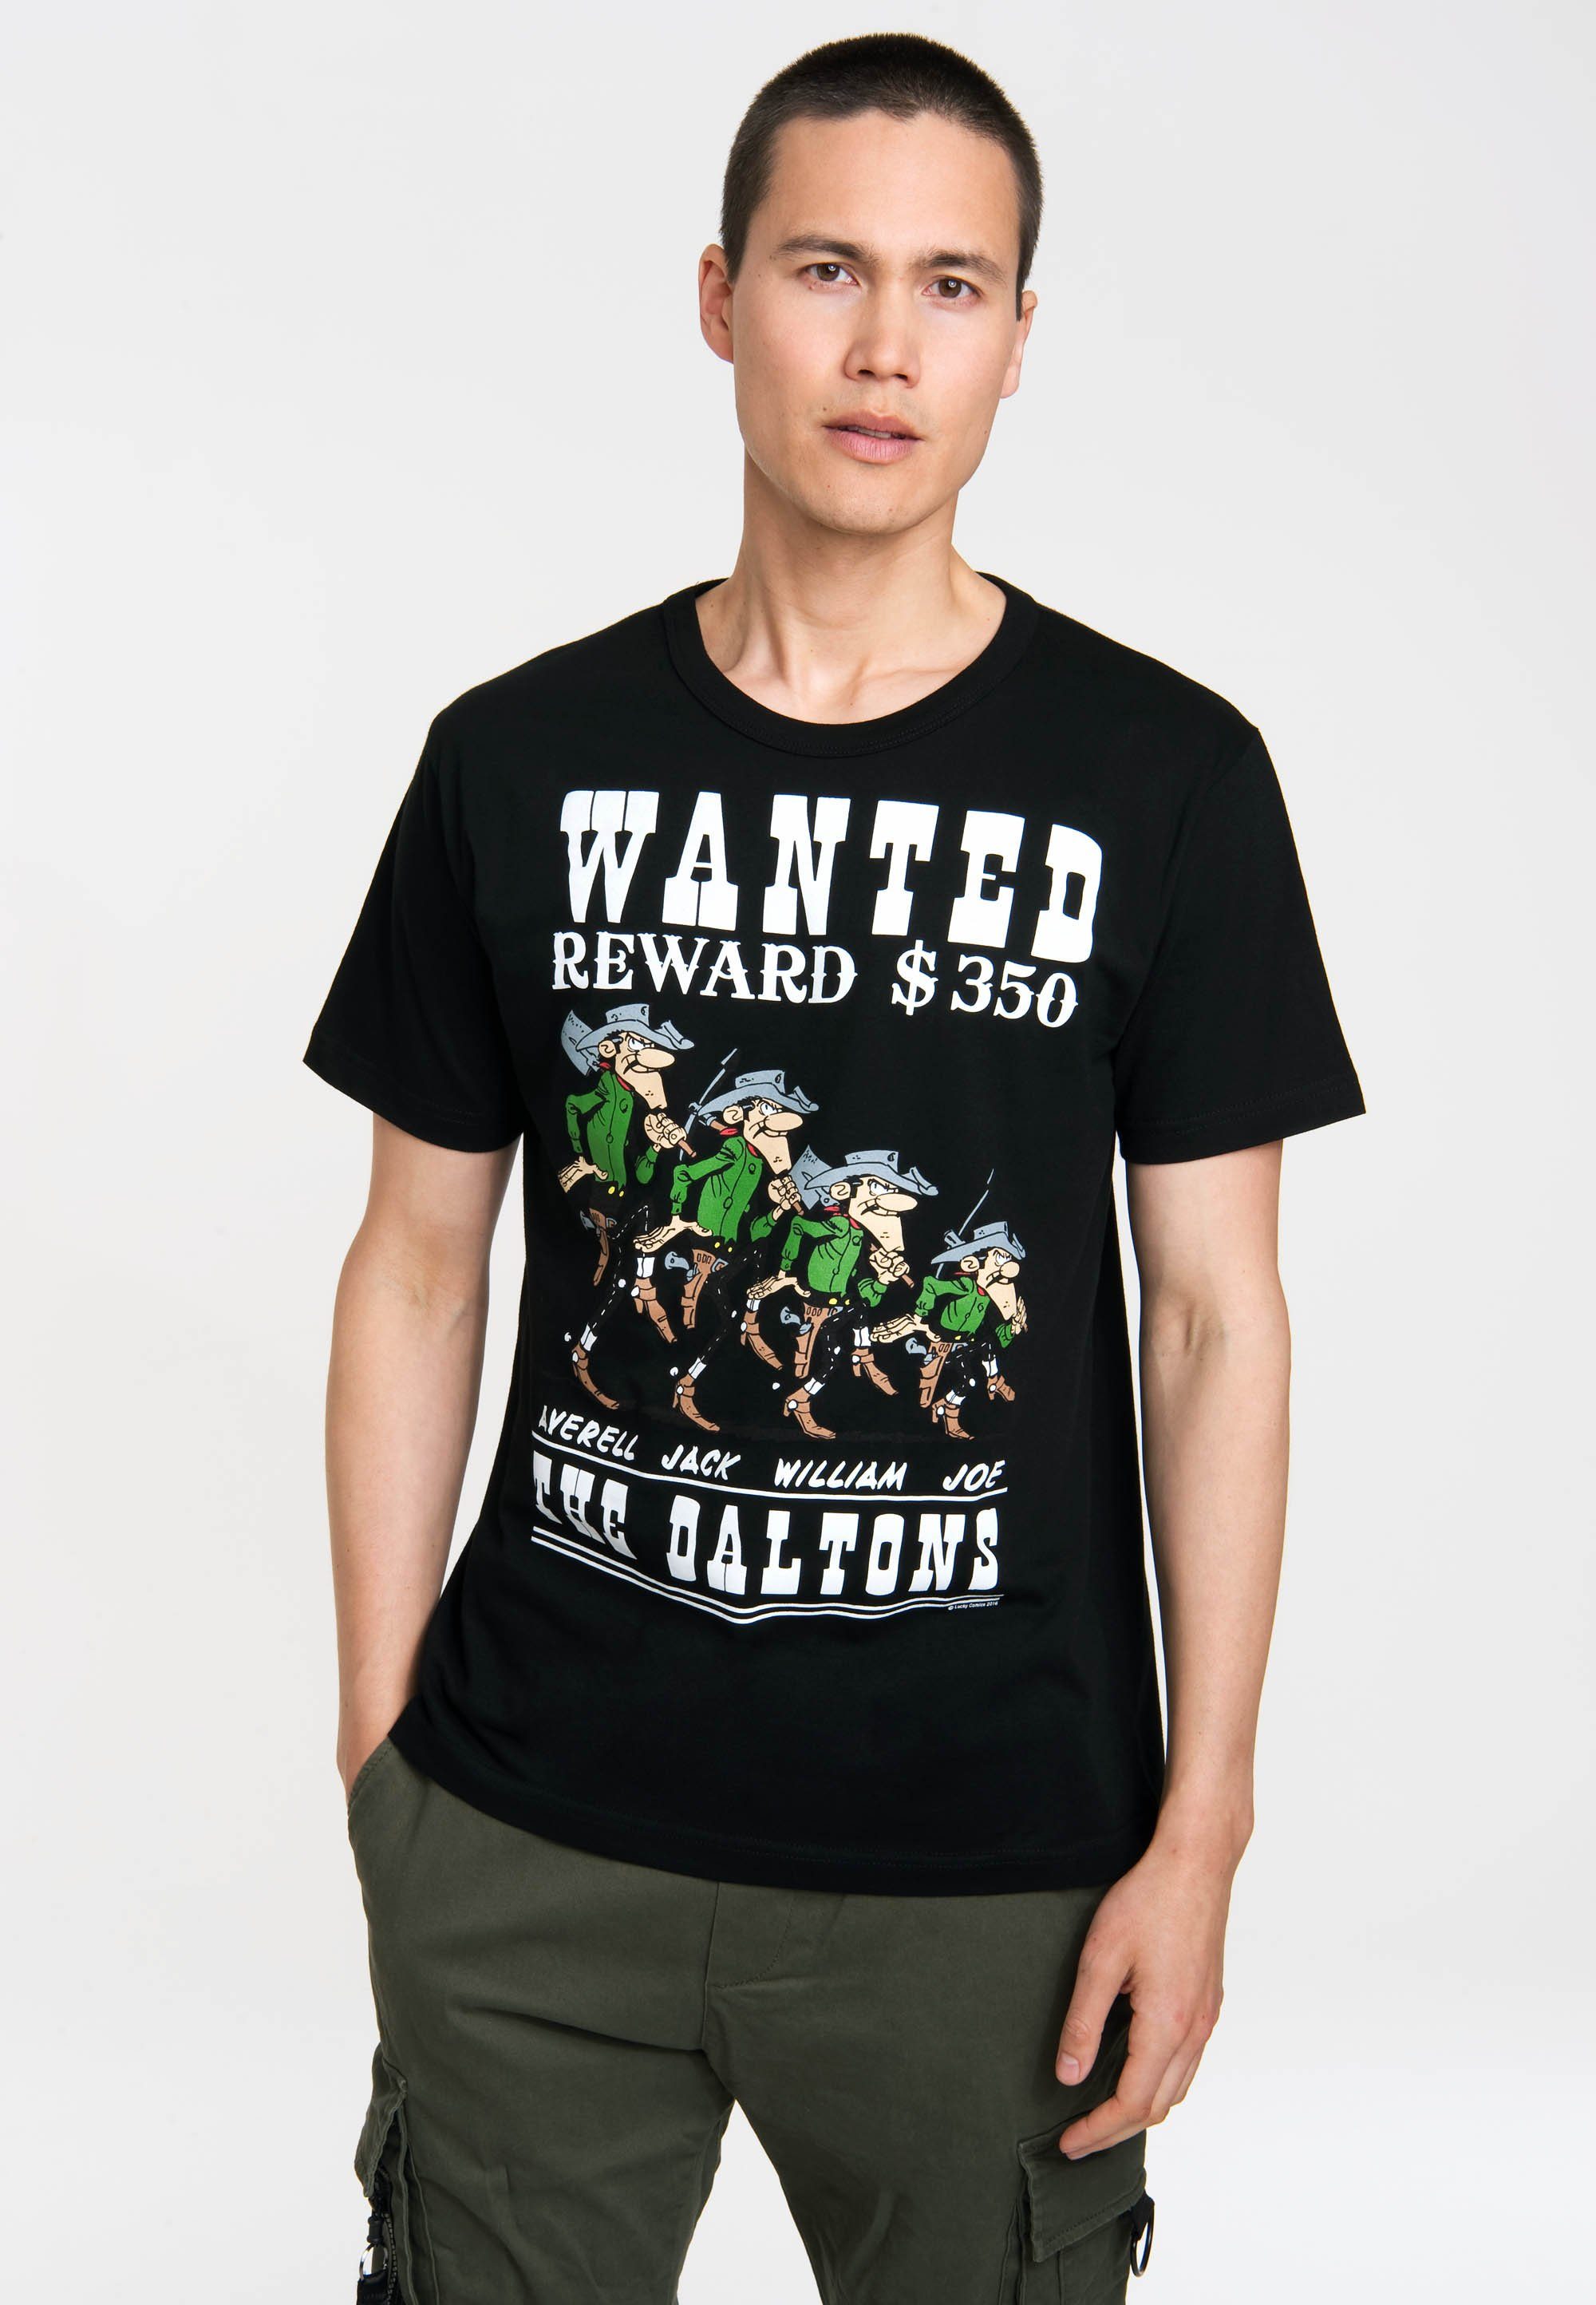 Daltons Luke - Retro-Druck The Lucky T-Shirt mit Wanted - LOGOSHIRT coolem